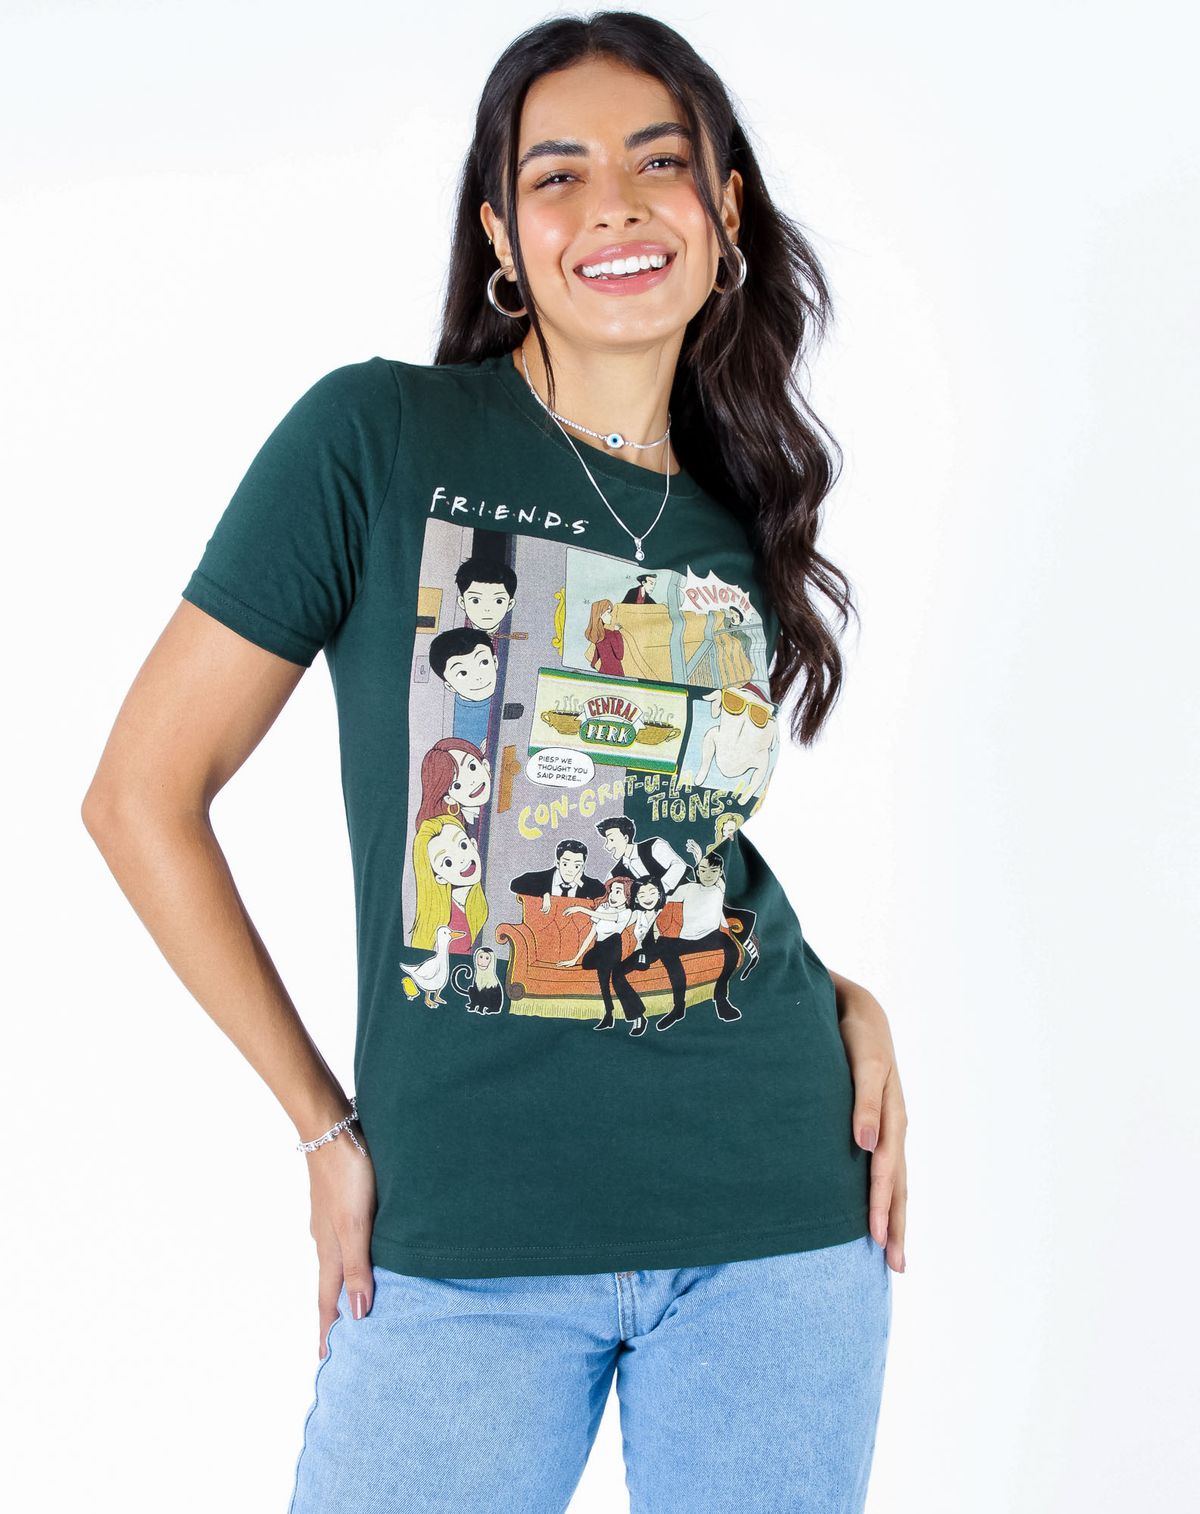 679896005-camiseta-manga-curta-feminina-estampa-friends-verde-militar-p-3f4